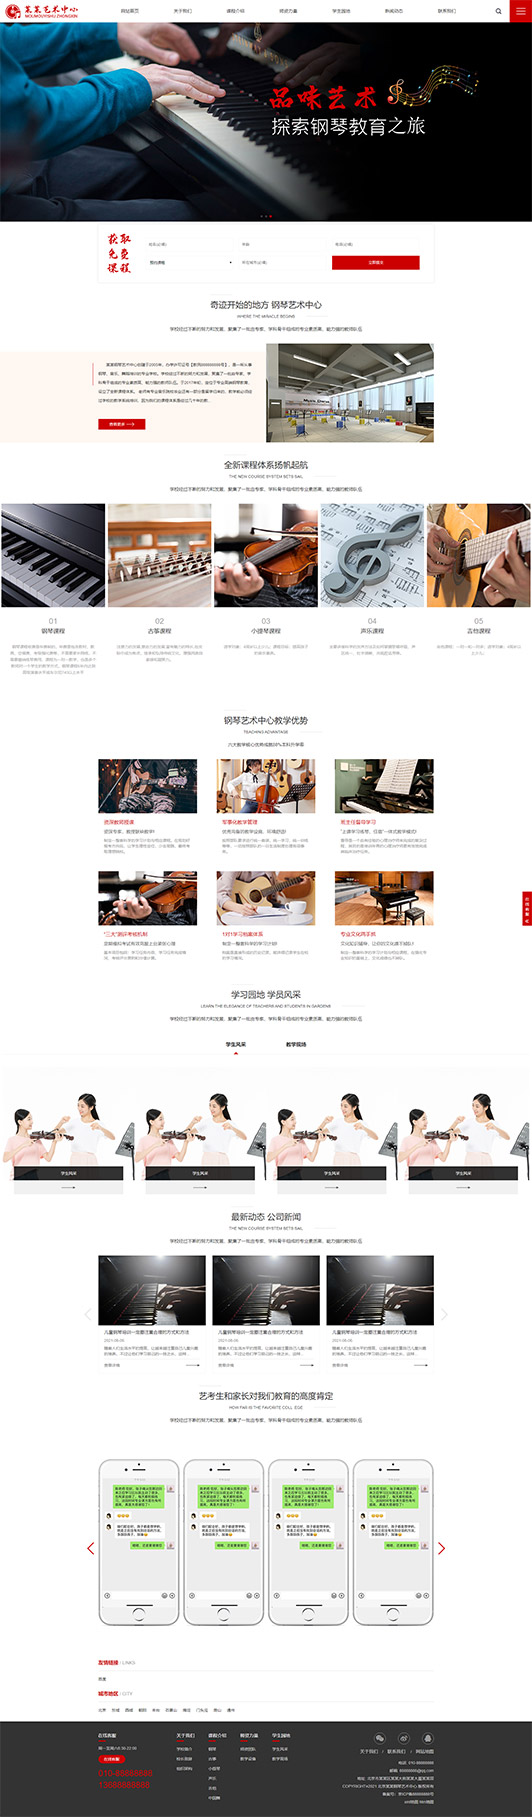 澄迈钢琴艺术培训公司响应式企业网站